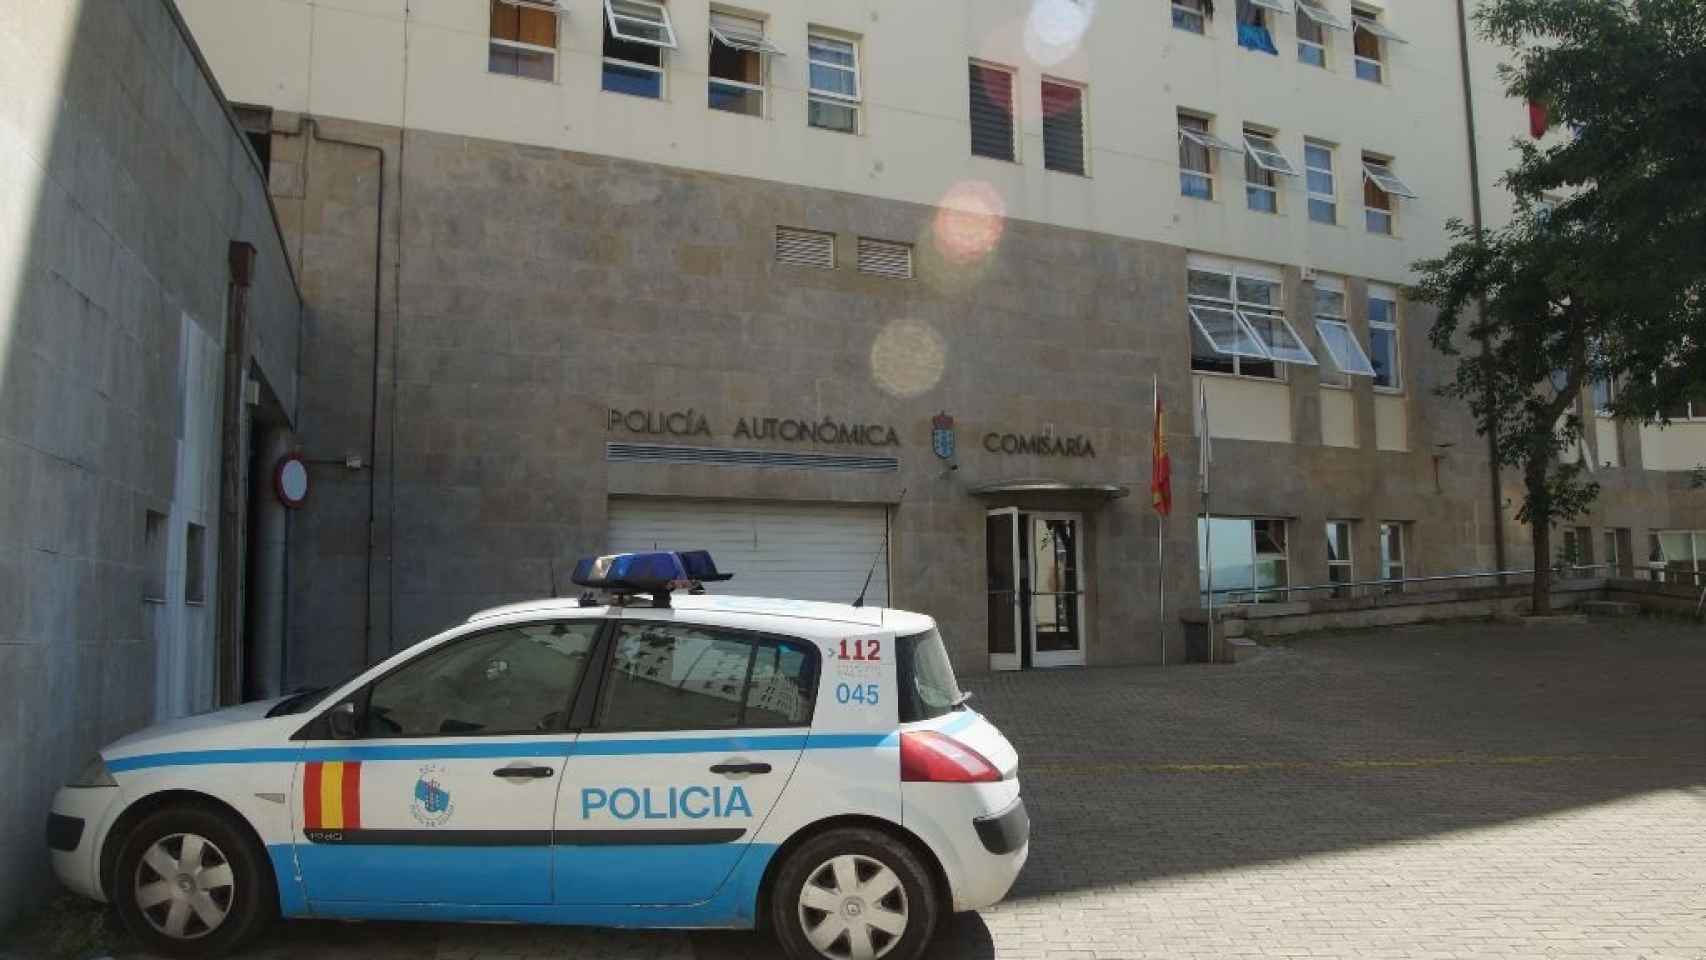 Comisaría de la Policía Autonómica de Vigo.